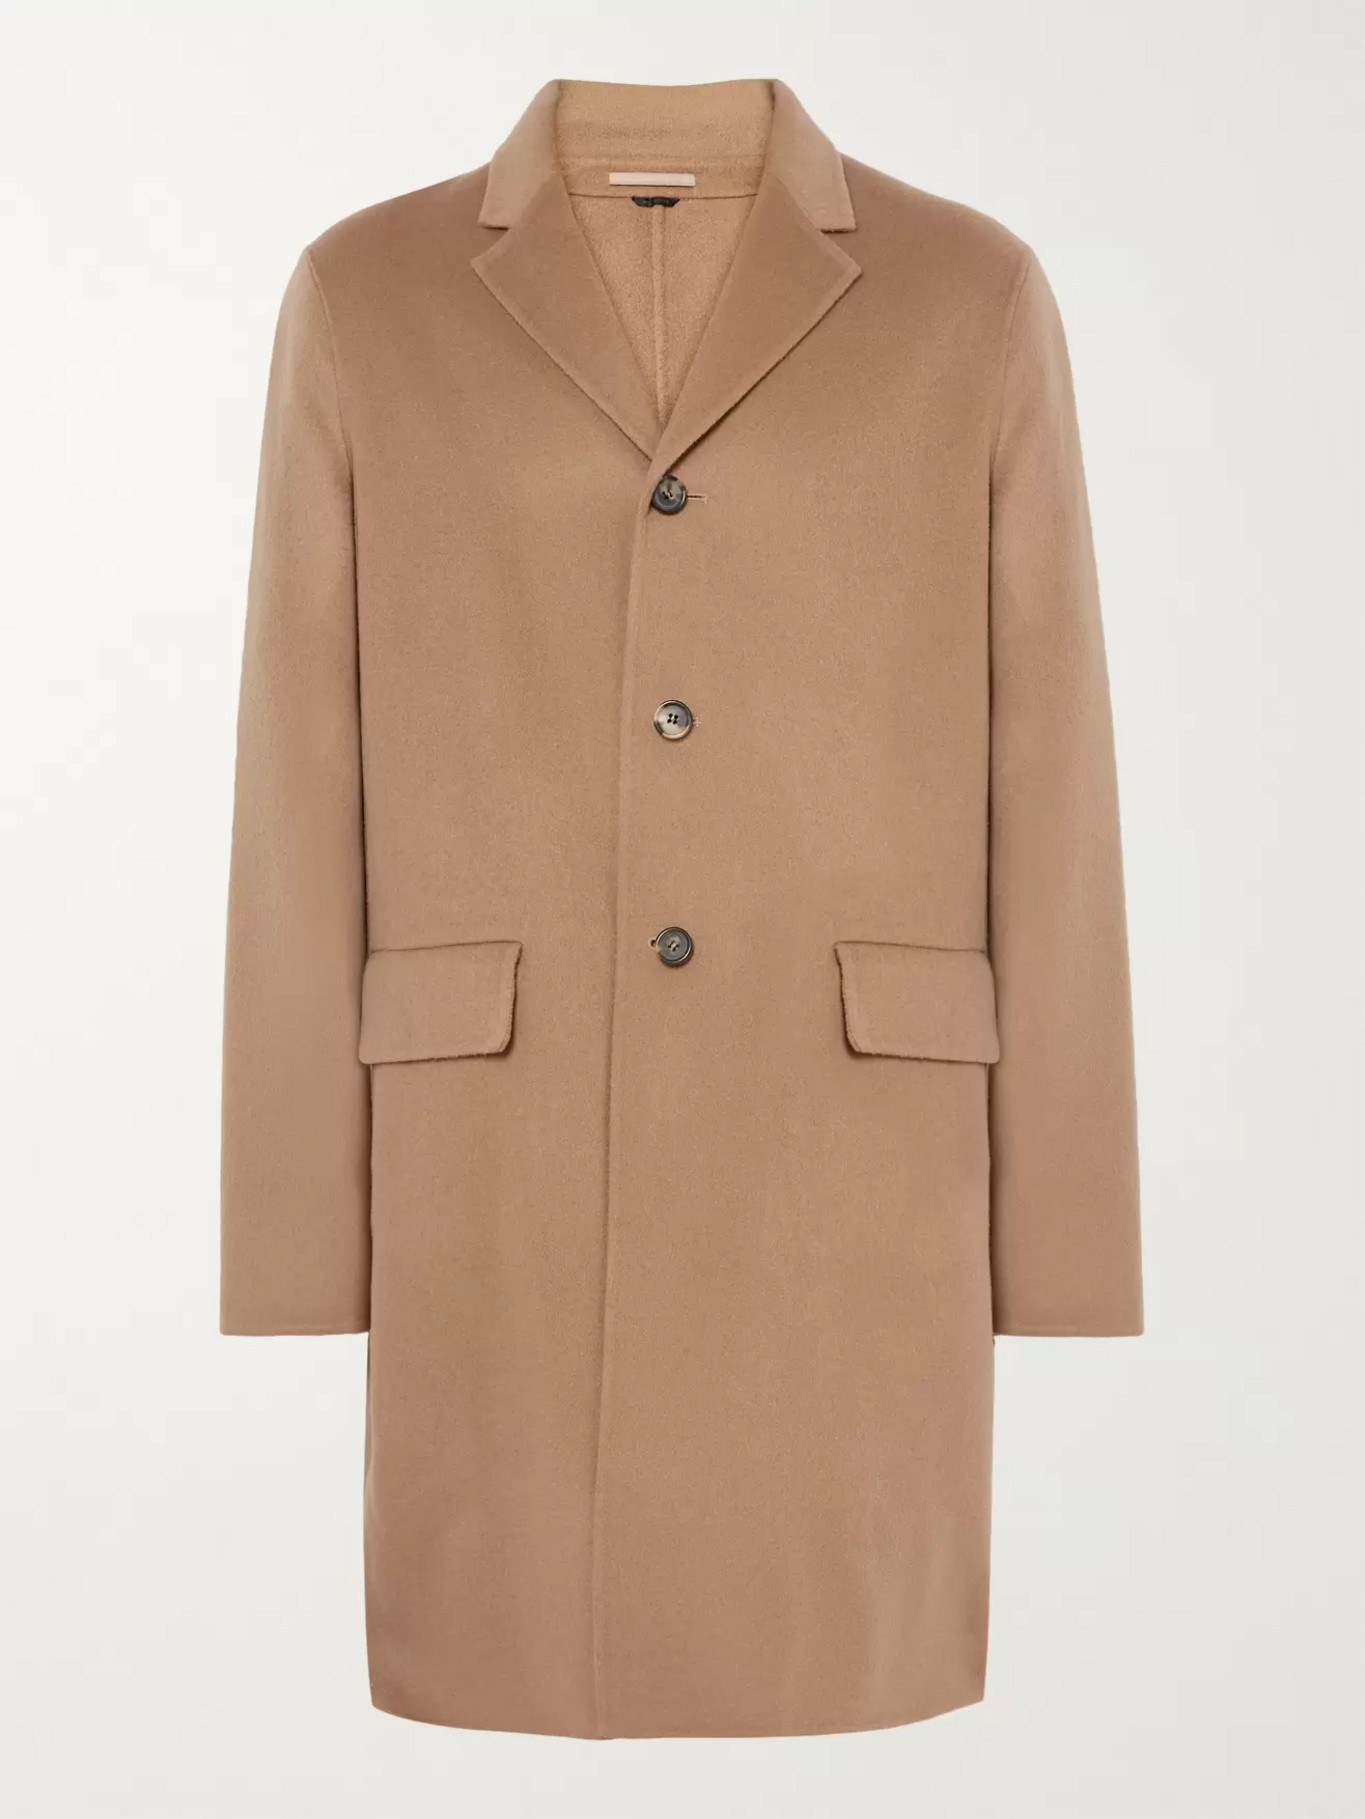 Men's Winter Coats | Designer Menswear | MR PORTER